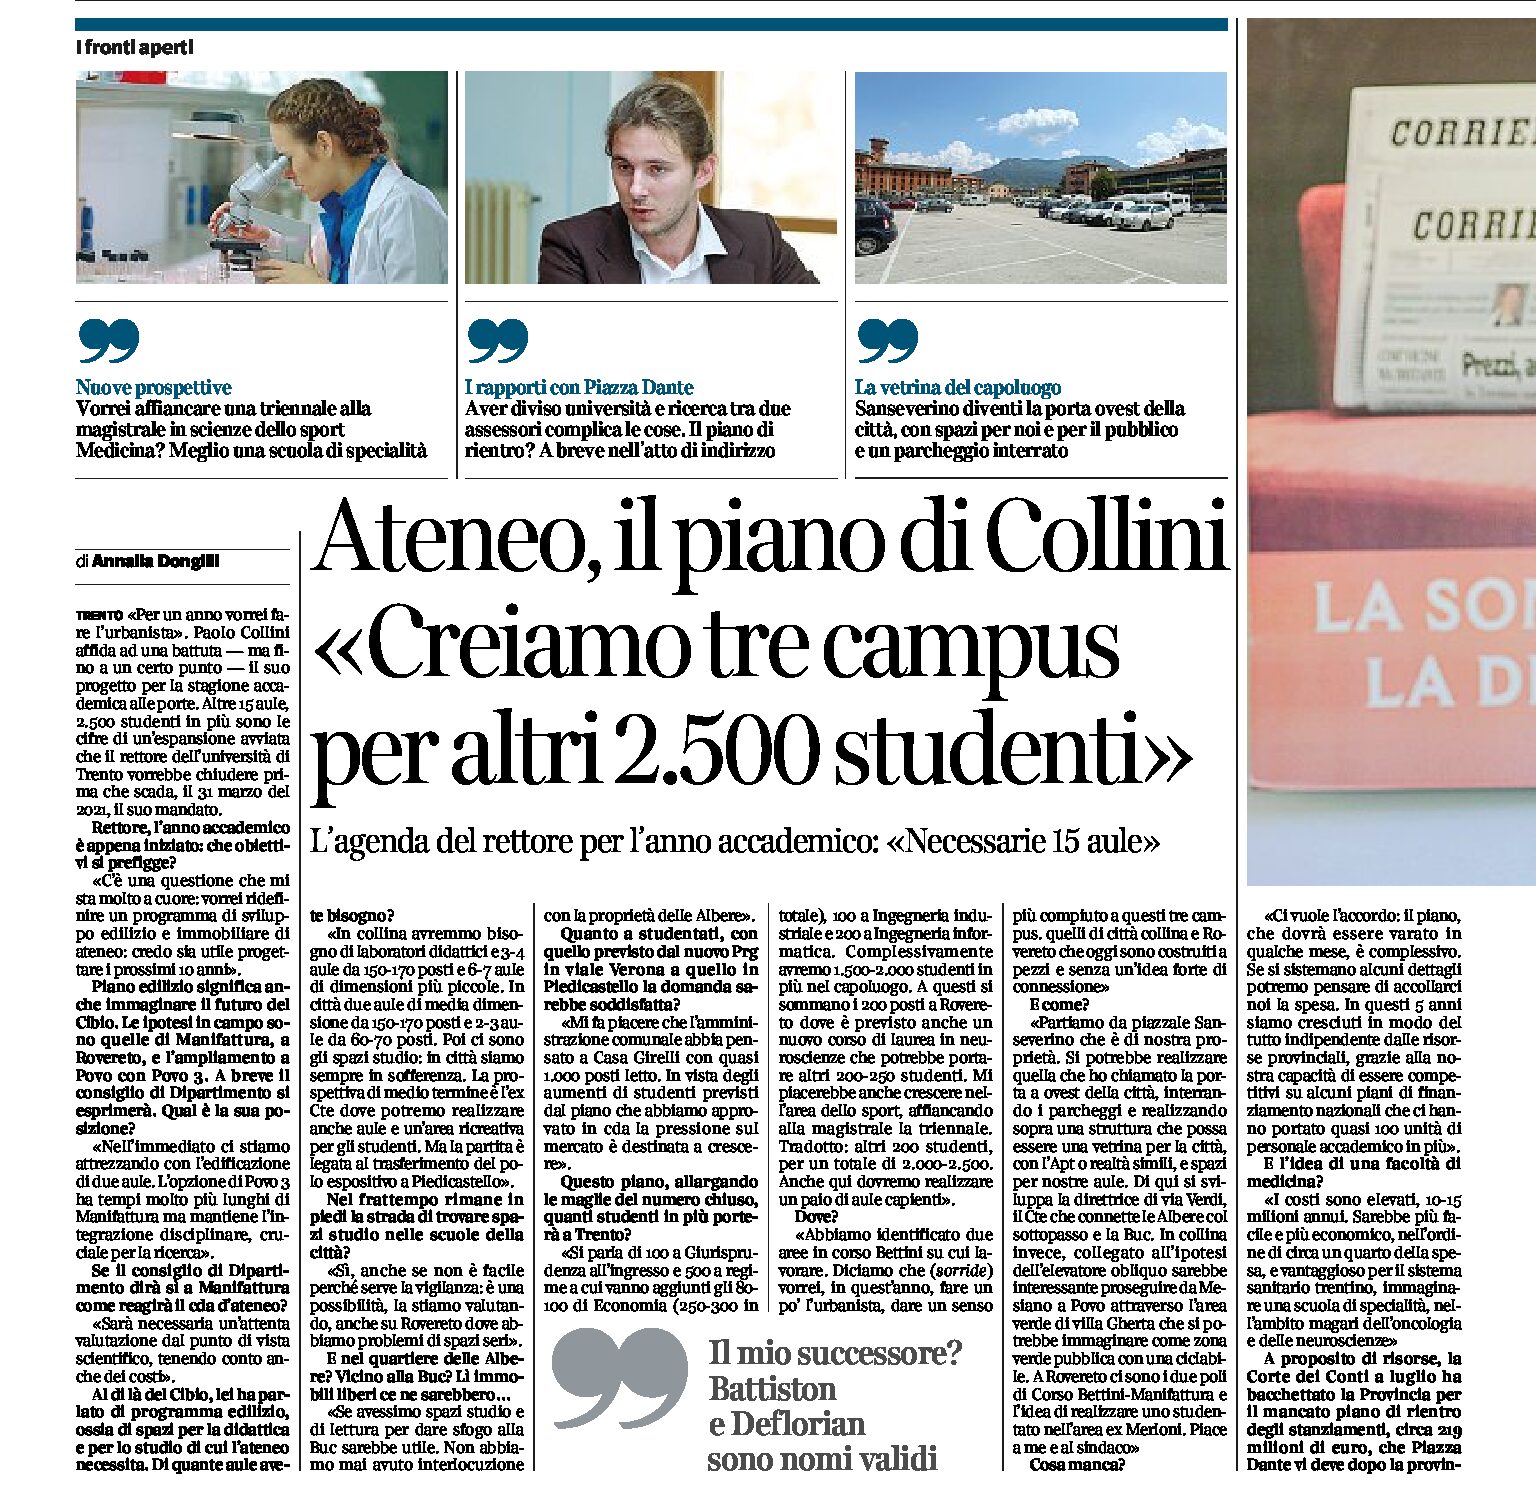 Trento, ateneo: intervista al rettore Collini “creiamo 3 campus per altri 2.500 studenti”